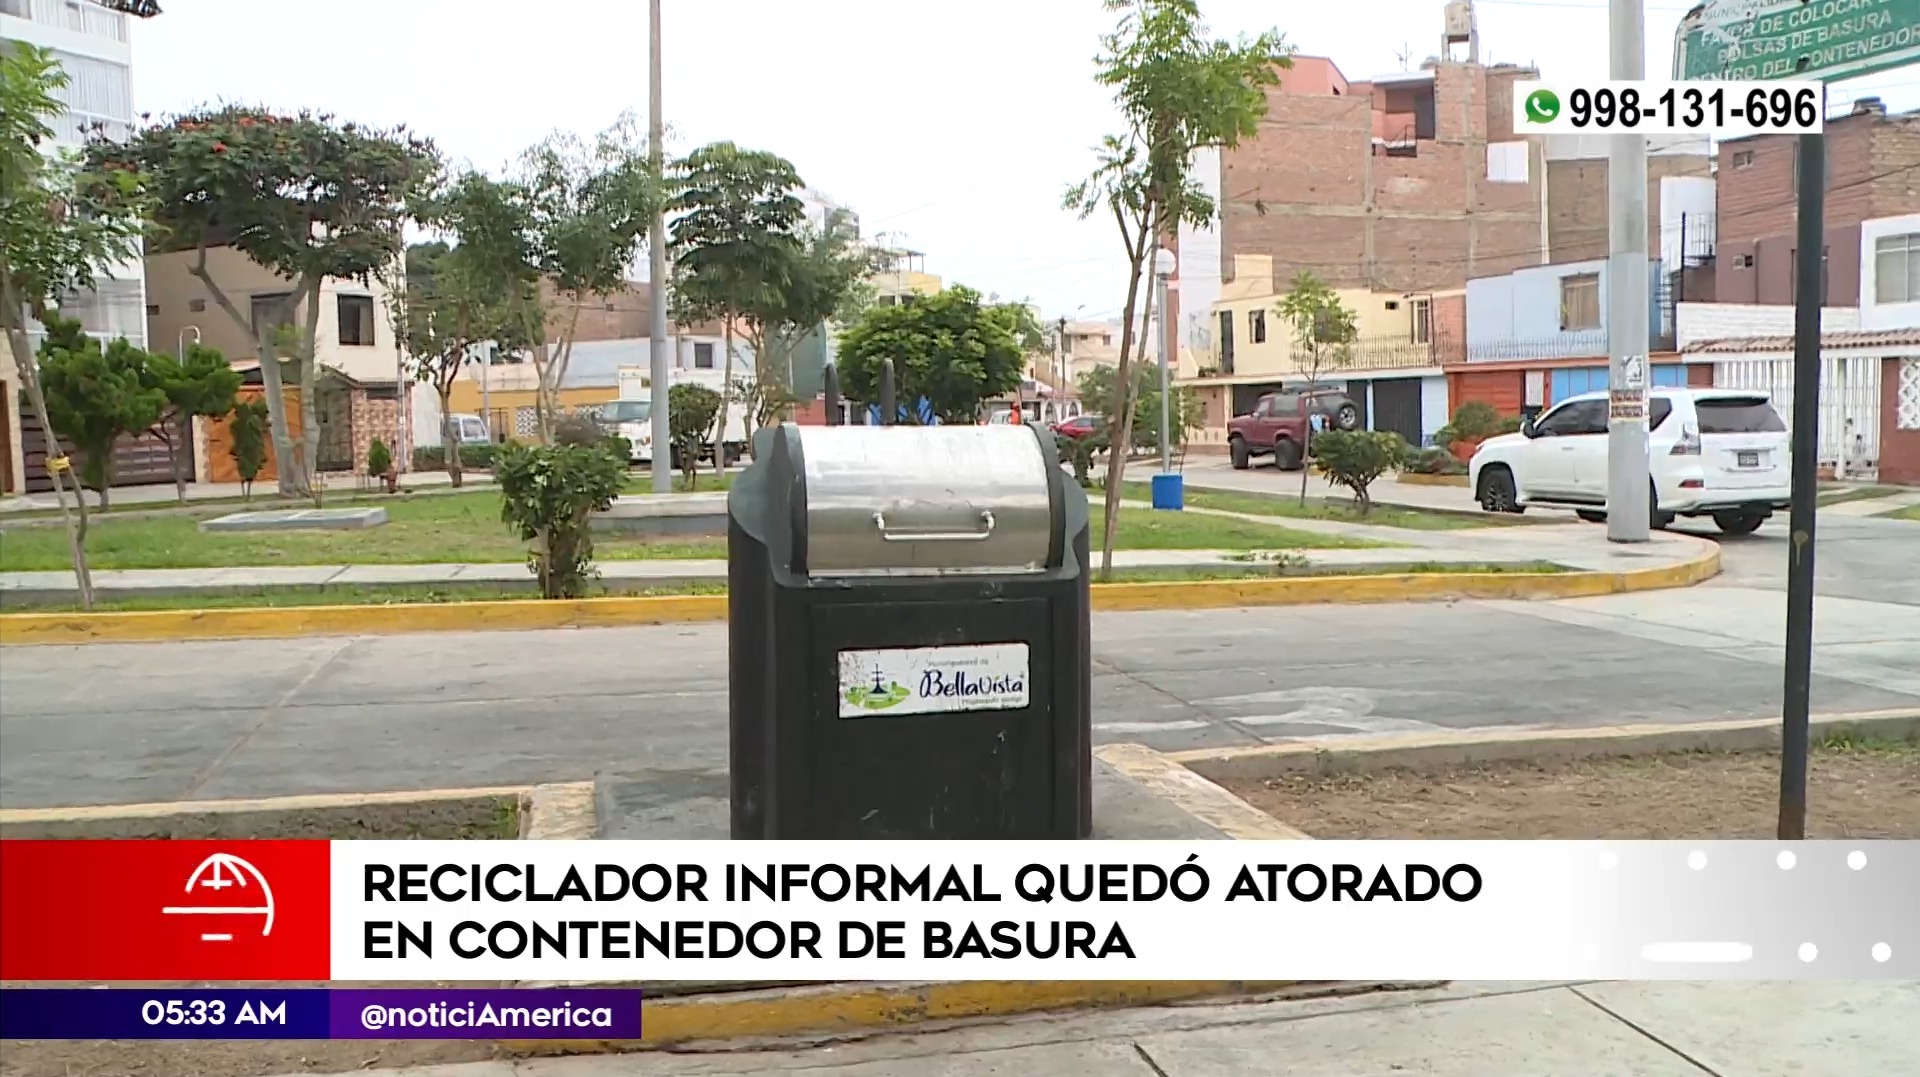 Reciclador quedó atorado en contenedor de basura en Bellavista. Foto: América Noticias